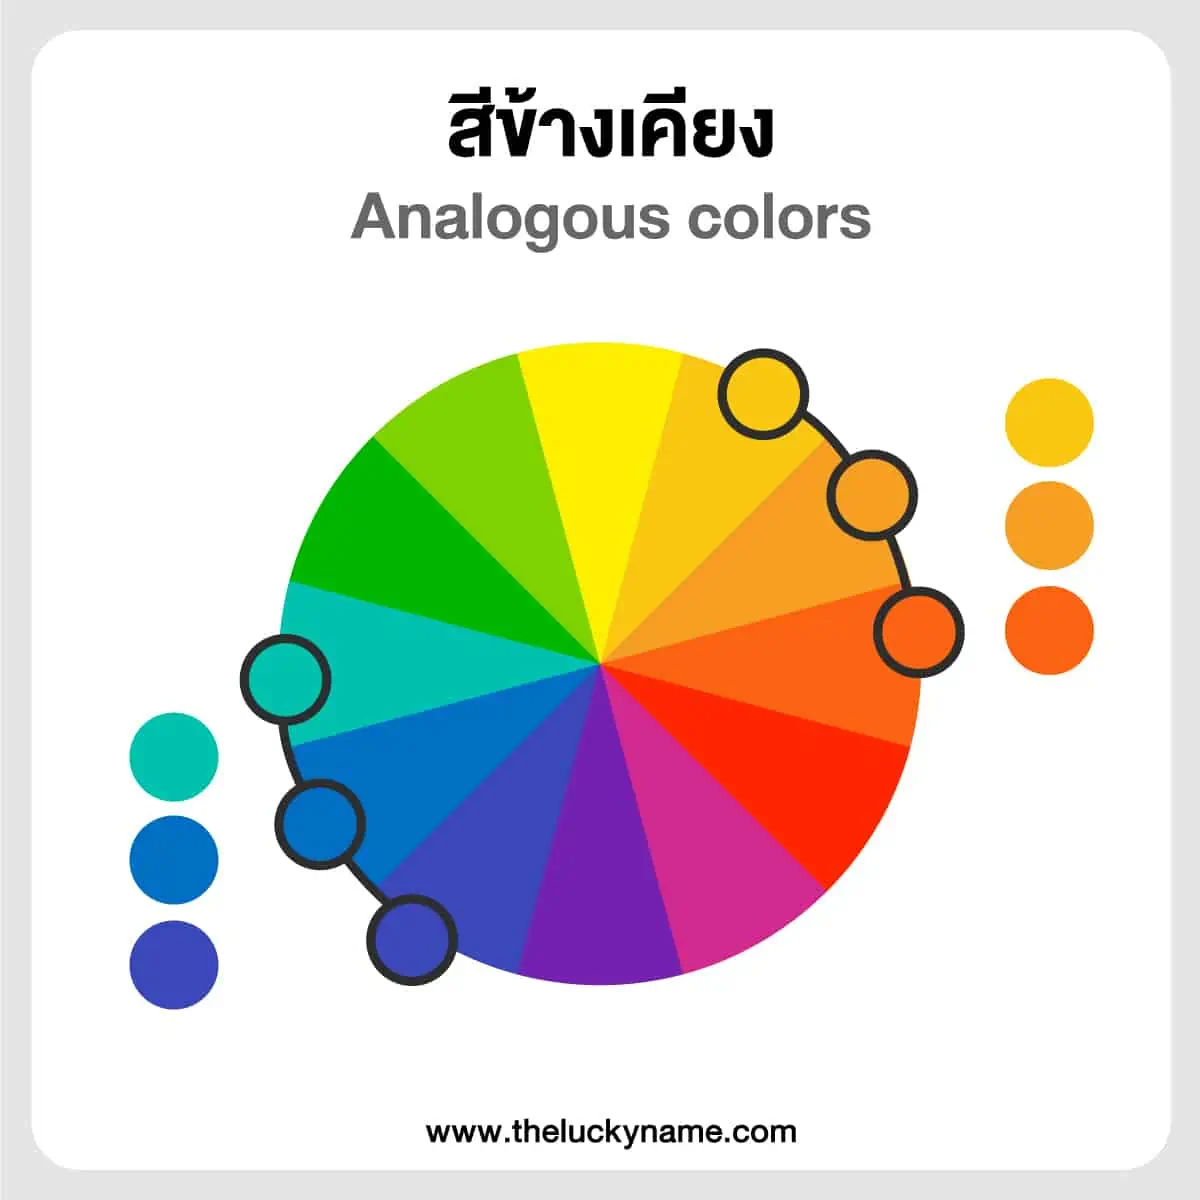 การเลือกใช้สีจากทฤษฎีของสี วงจรสี ในการออกแบบโลโก้และบรรจุภัณฑ์ - The Lucky  Name